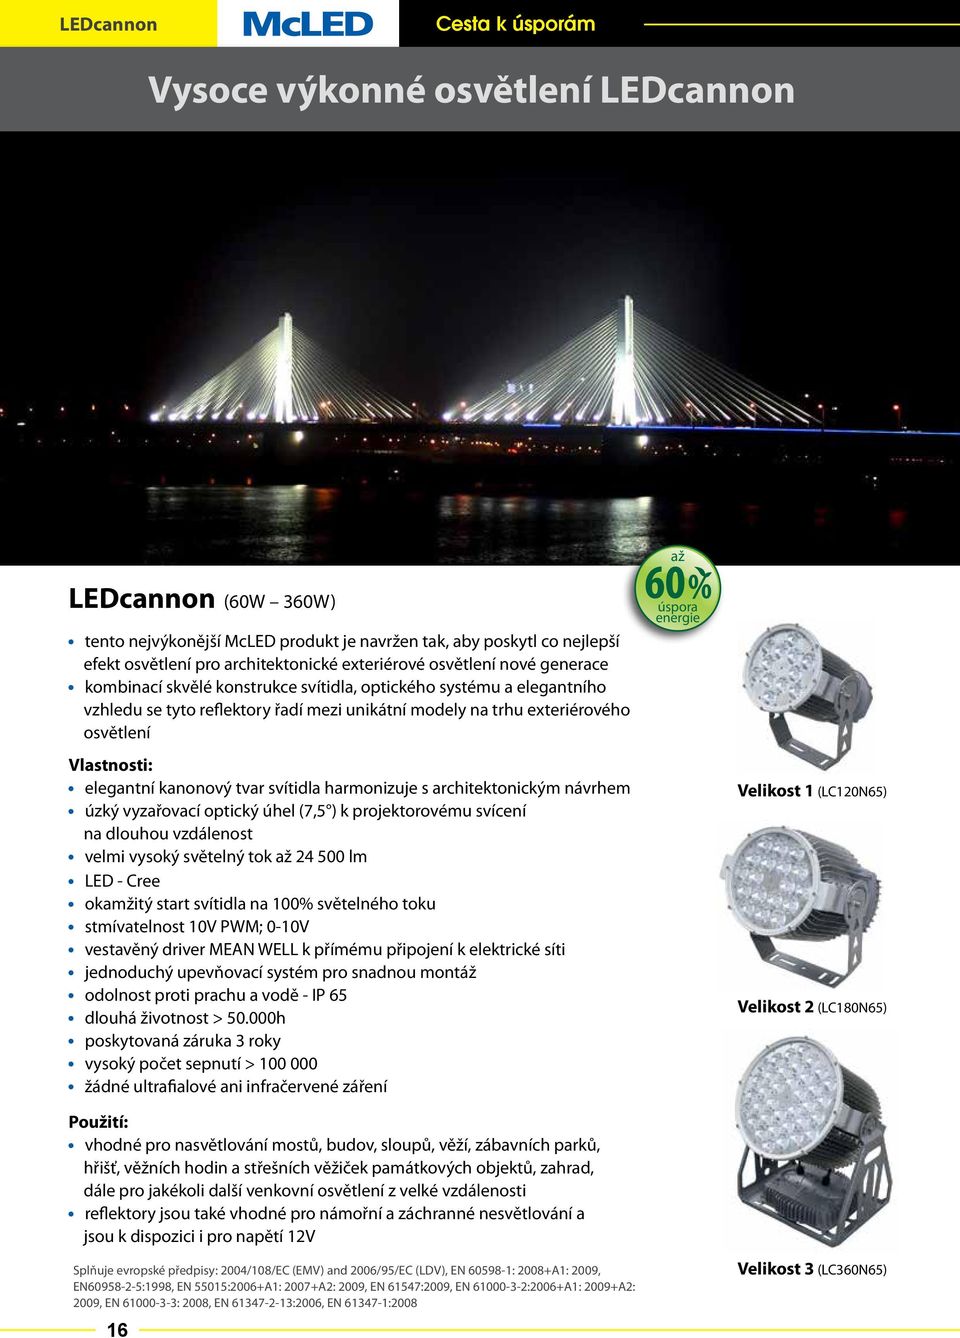 harmonizuje s architektonickým návrhem úzký vyzařovací optický úhel (7,5 ) k projektorovému svícení na dlouhou vzdálenost velmi vysoký světelný až 24 500 lm LED - okamžitý start svítidla na 100%